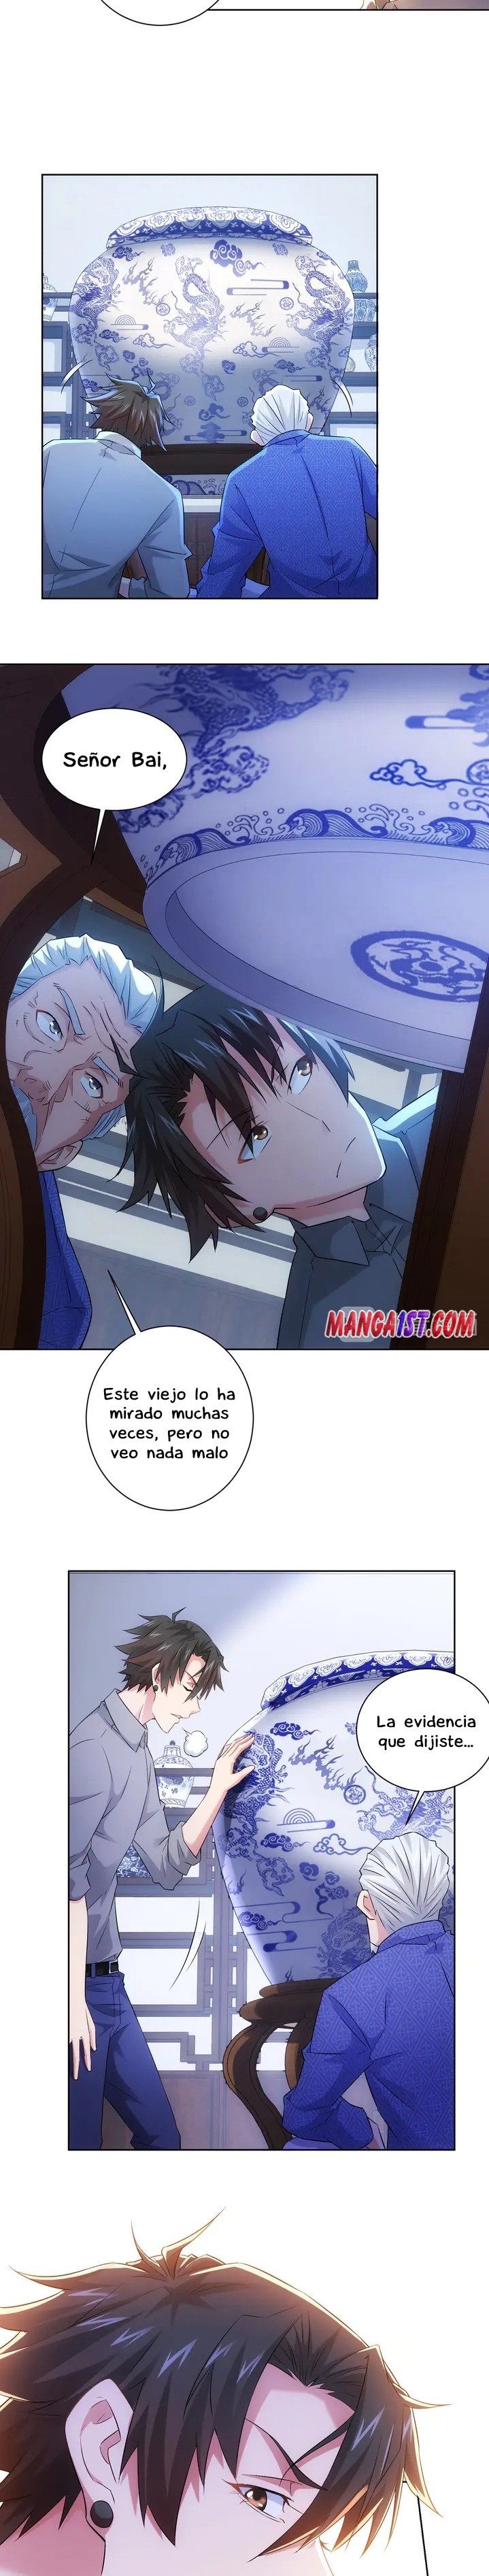 Manga Puedo ver la tasa de exito Chapter 23 image number 14